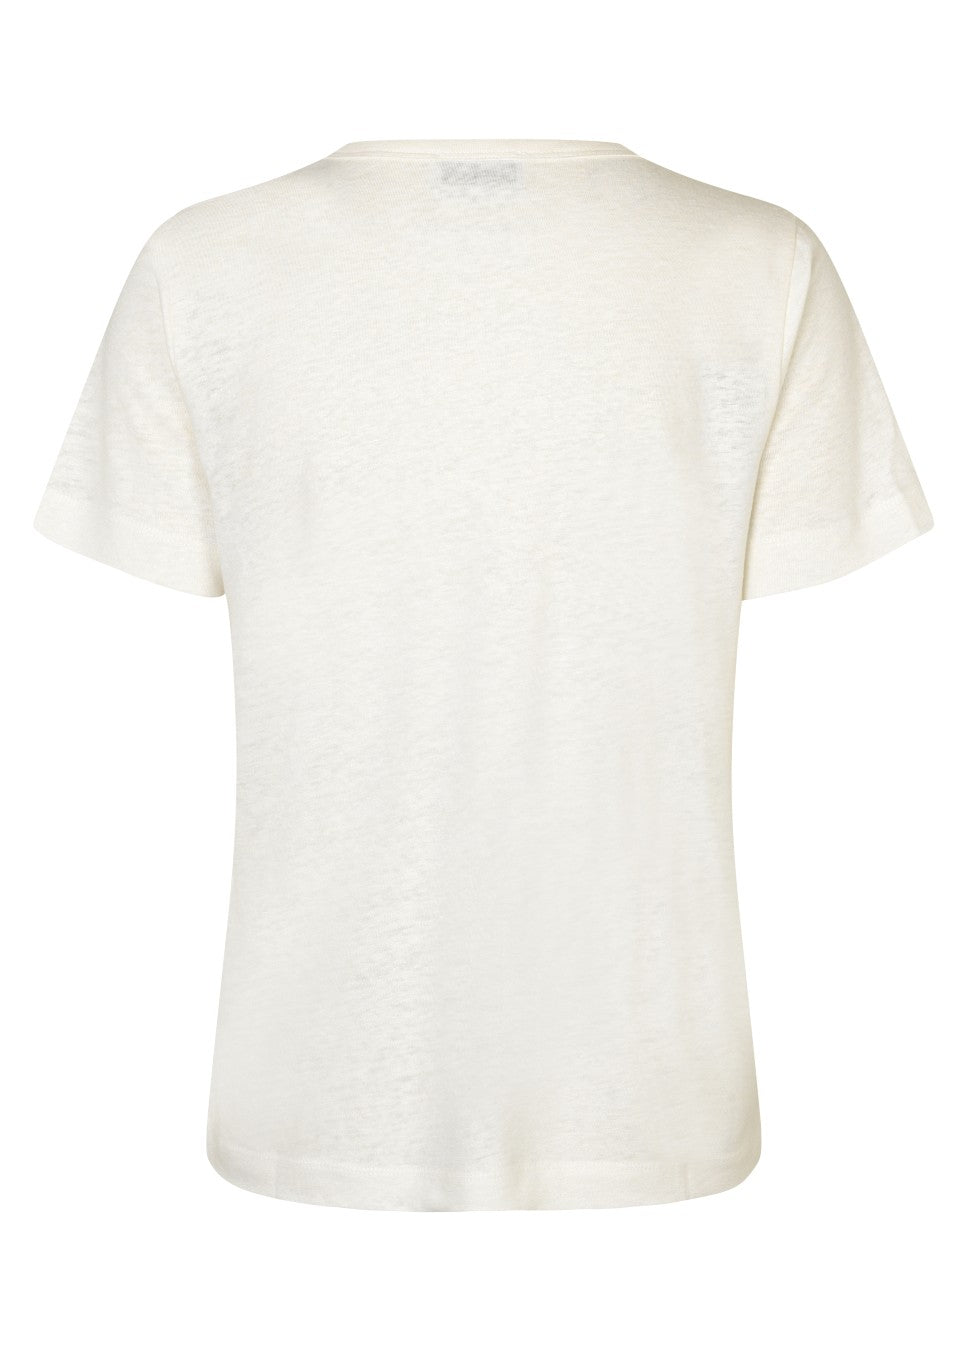 Een fijne basic die in iedere zomergarderobe hoort, dit witte basic linnen T-shirt Holt van het merk Modstrom. Het witte T-shirt heeft een normale pasvorm. Het linnen Holt t-shirt heeft een ronde halslijn en korte mouwen.  Het linnen T-shirt is ook verkrijgbaar in de kleur grijs. Shop linnen dames T-shirts online.